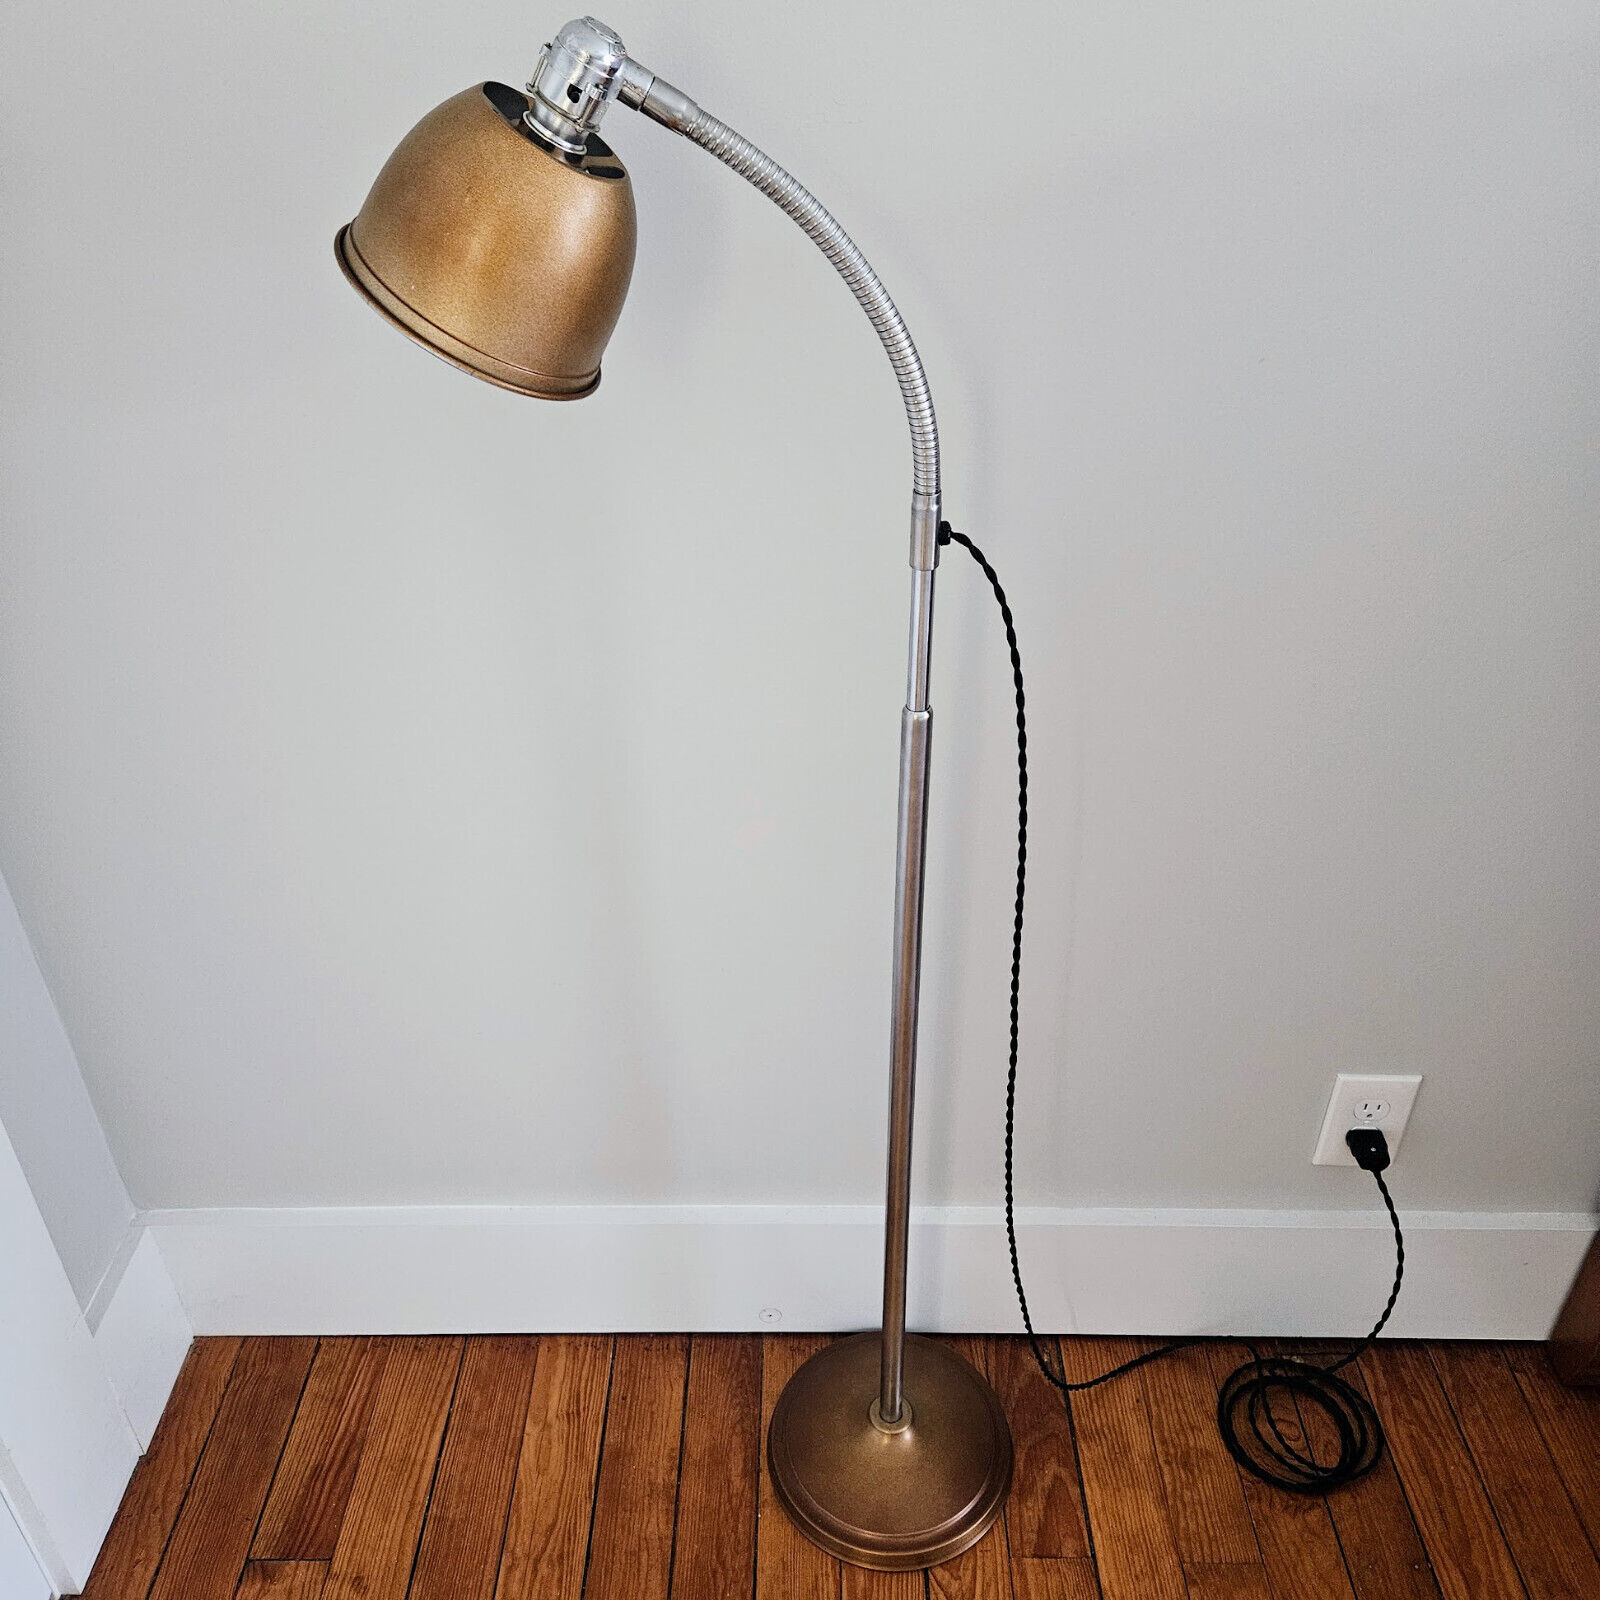 Vintage Ajusco Industrial Floor Lamp. Steampunk Floor Lamp. Industrial Lighting.